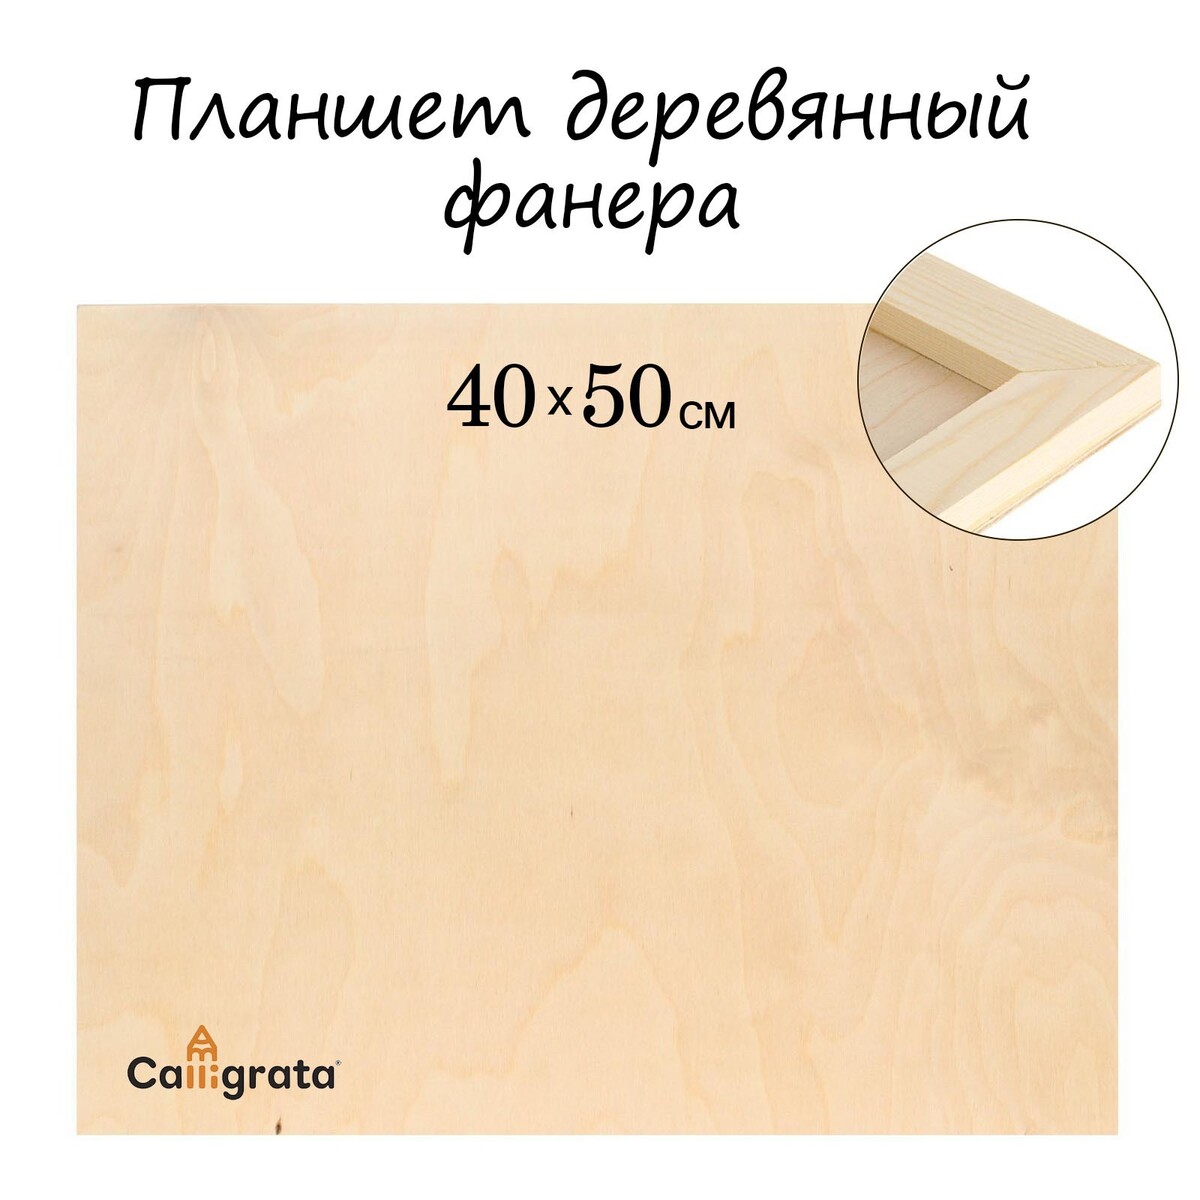 Планшет деревянный 40 х 50 х 2 см, фанера (для рисования эпоксидной смолой) планшет круглый деревянный фанера d 30 х 2 см сосна calligrata